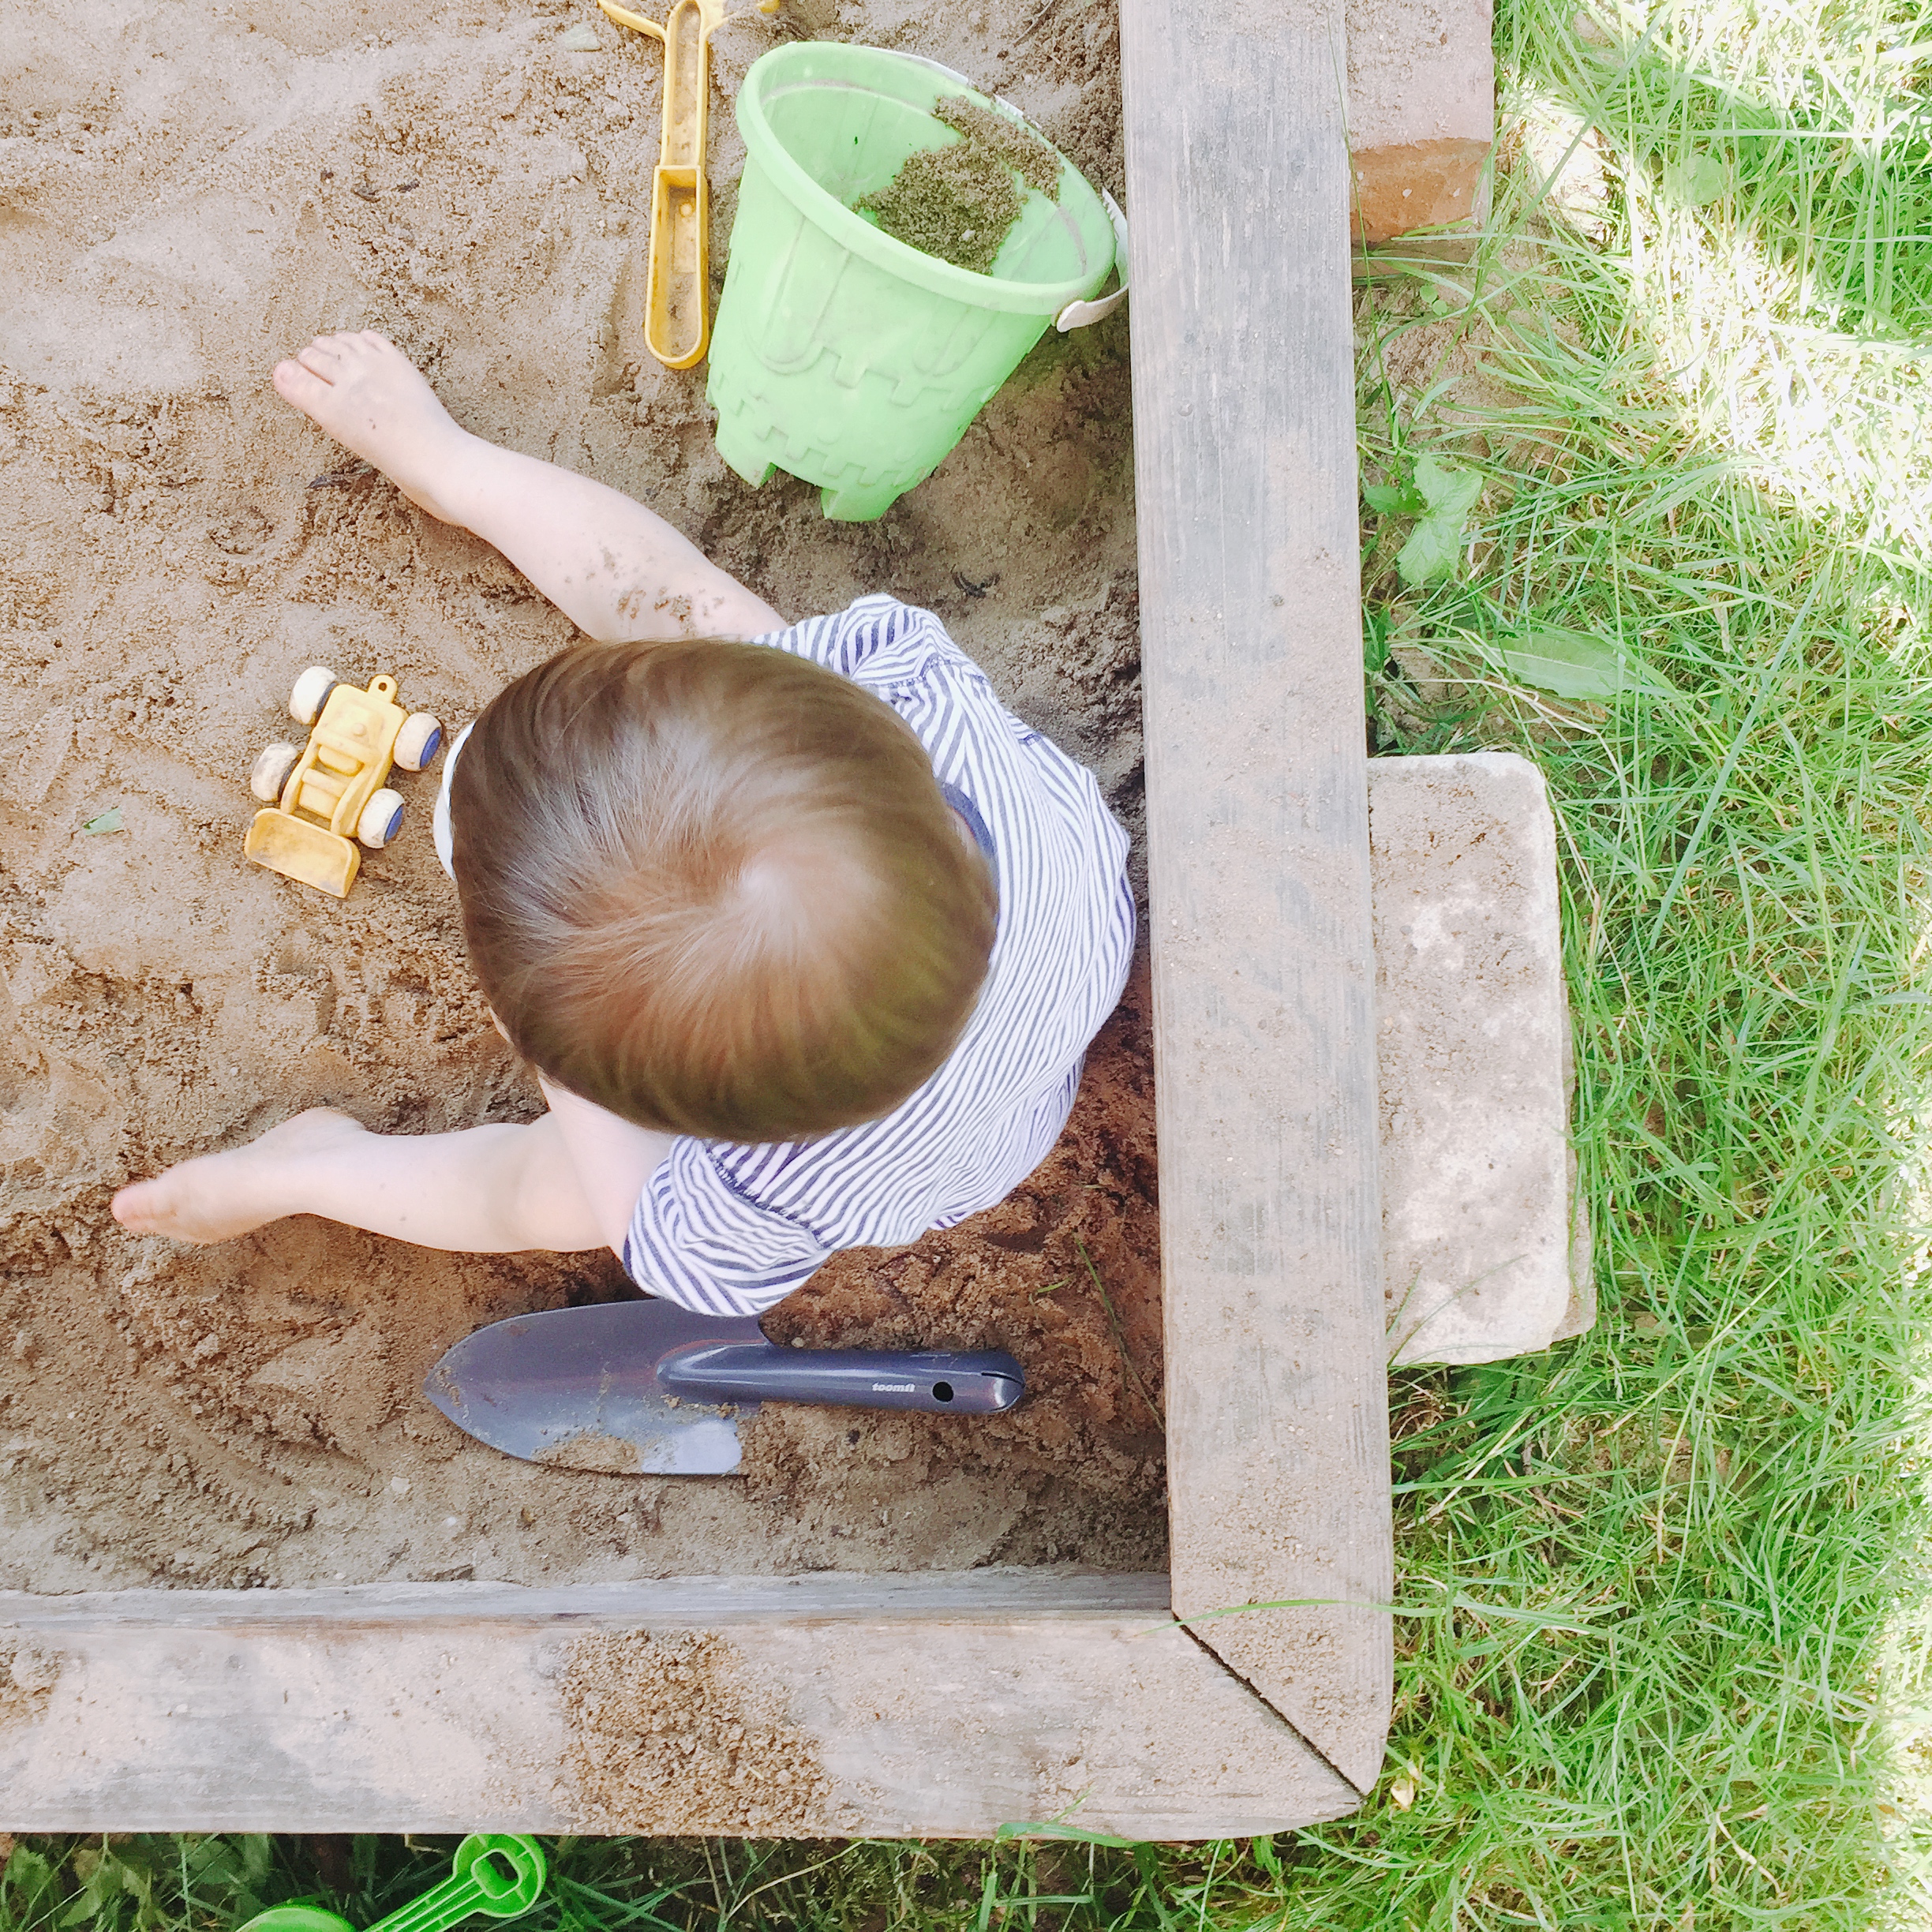 Kind spielt im Sand